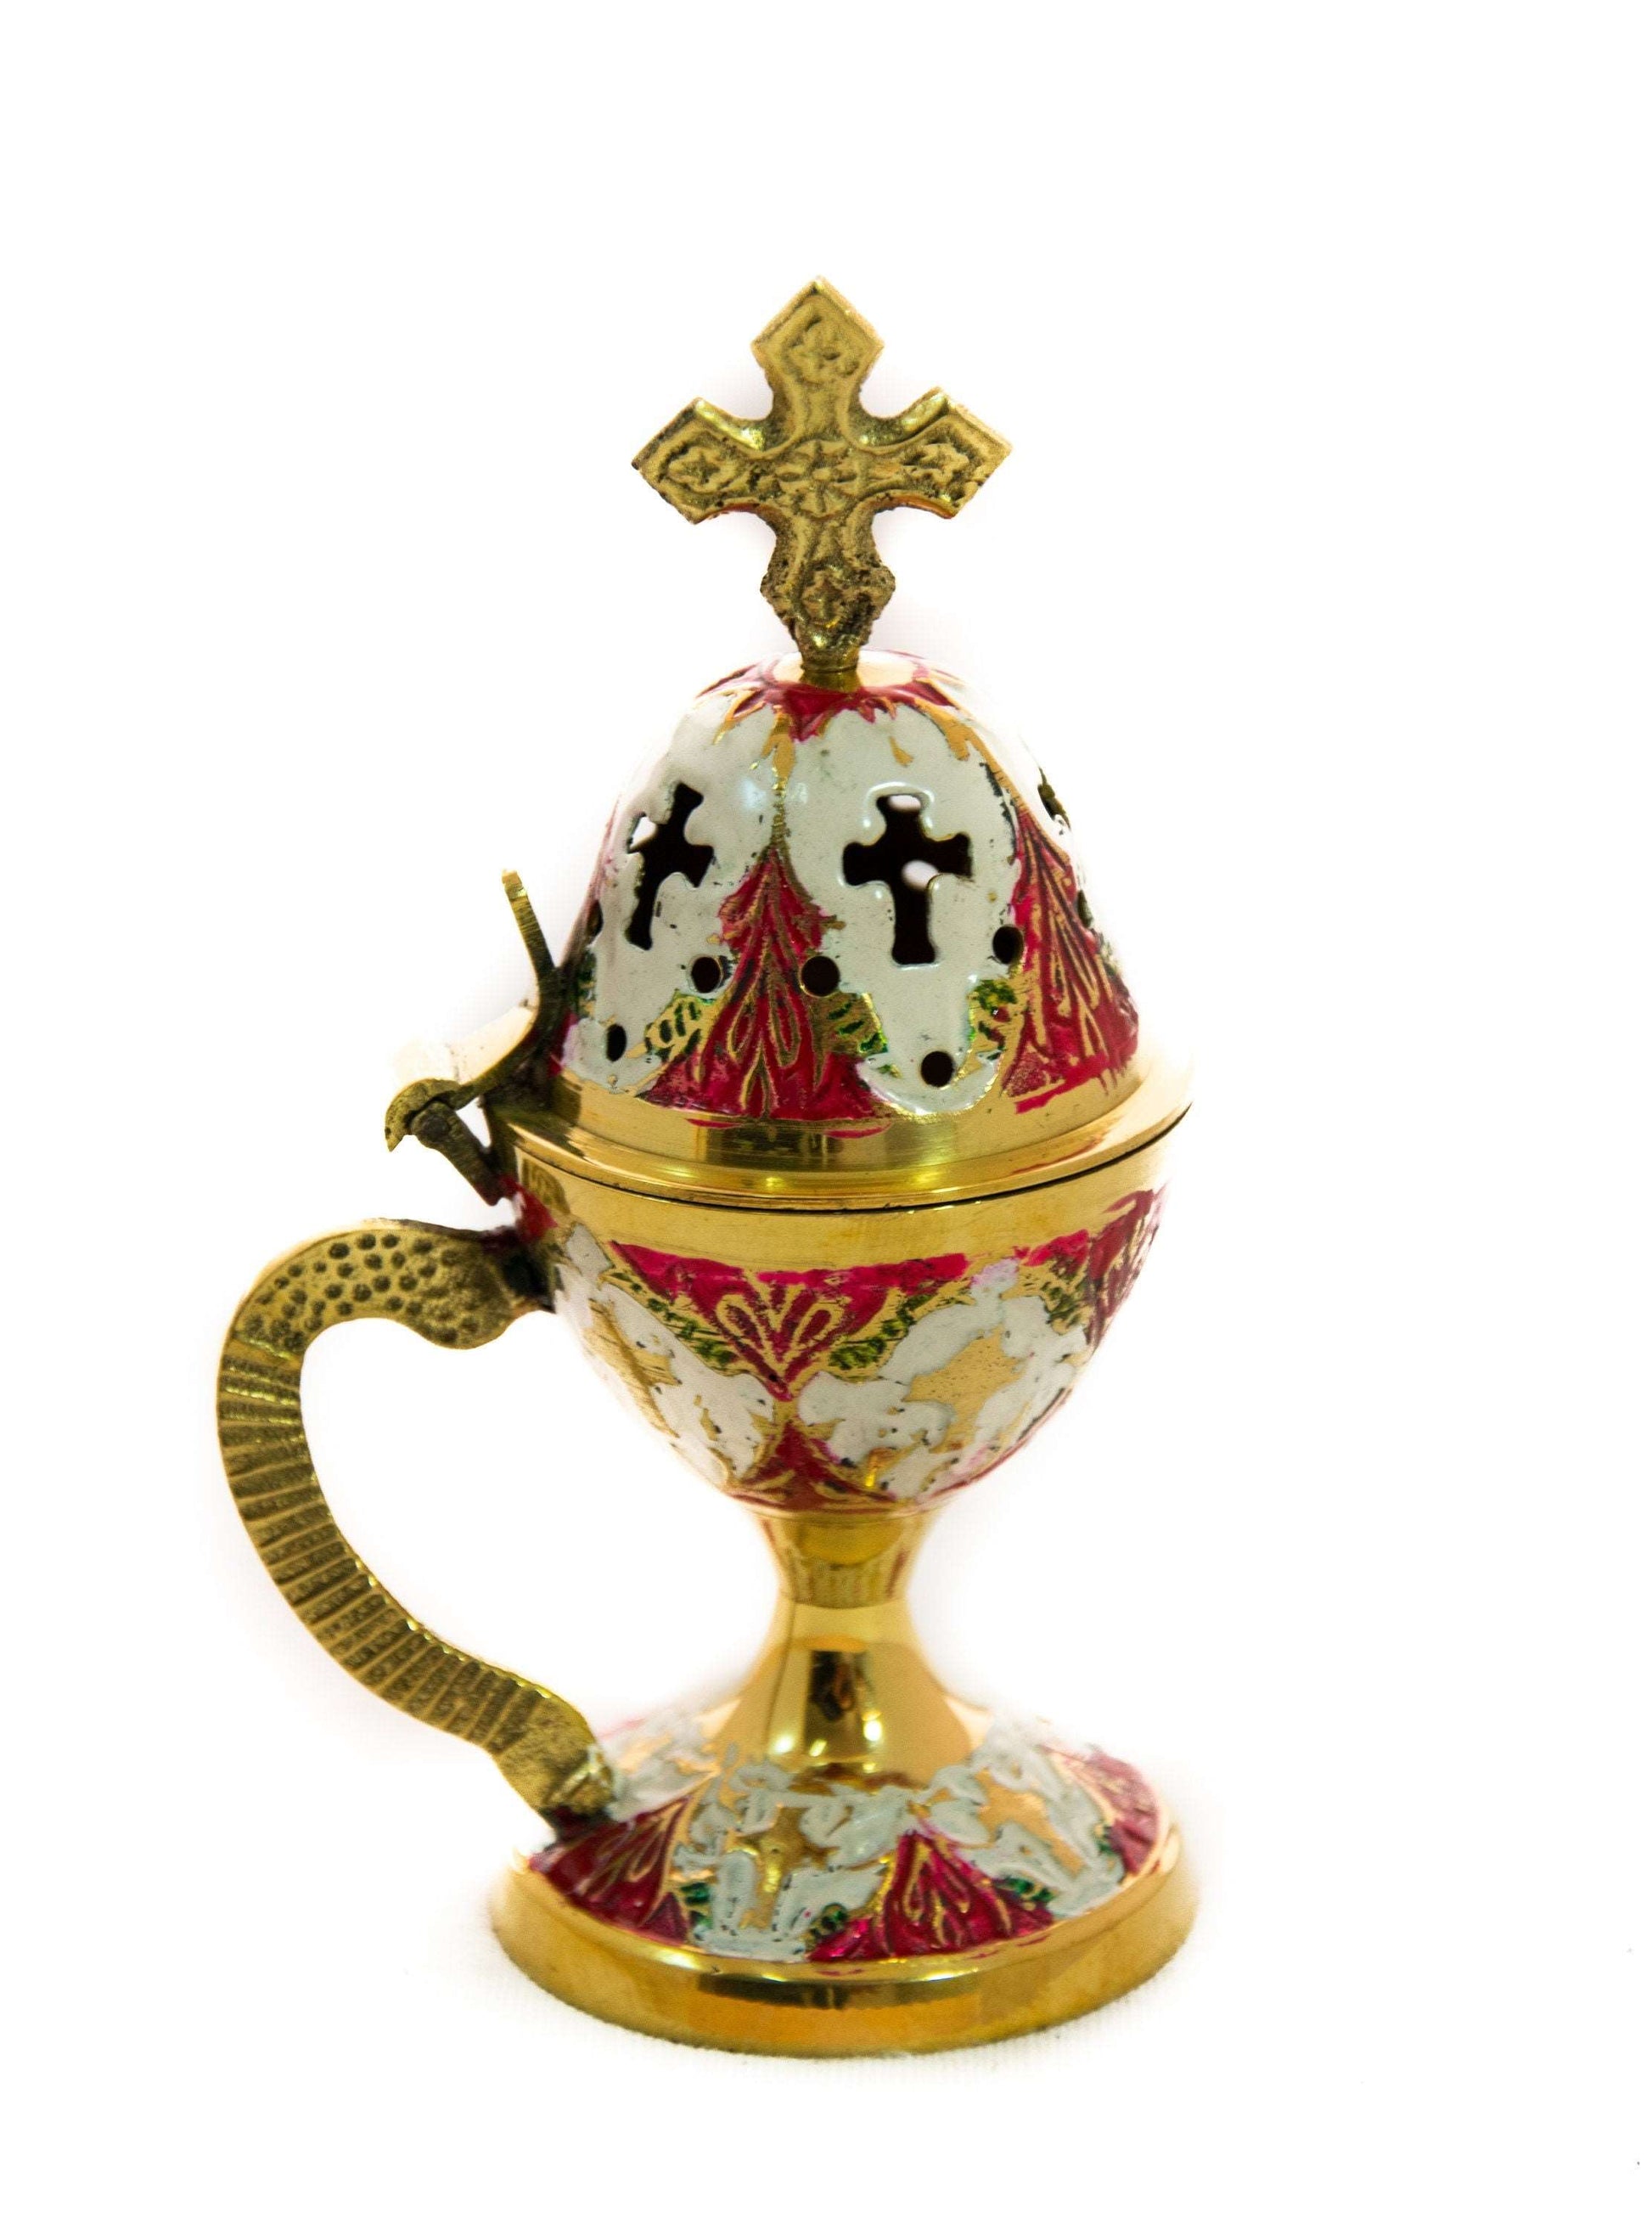 Christian Brass Resin Incense Burner, Greek Orthodox Thurible Incense holder, Metal Byzantine Home Censer Perfume burner, religious decor TheHolyArt